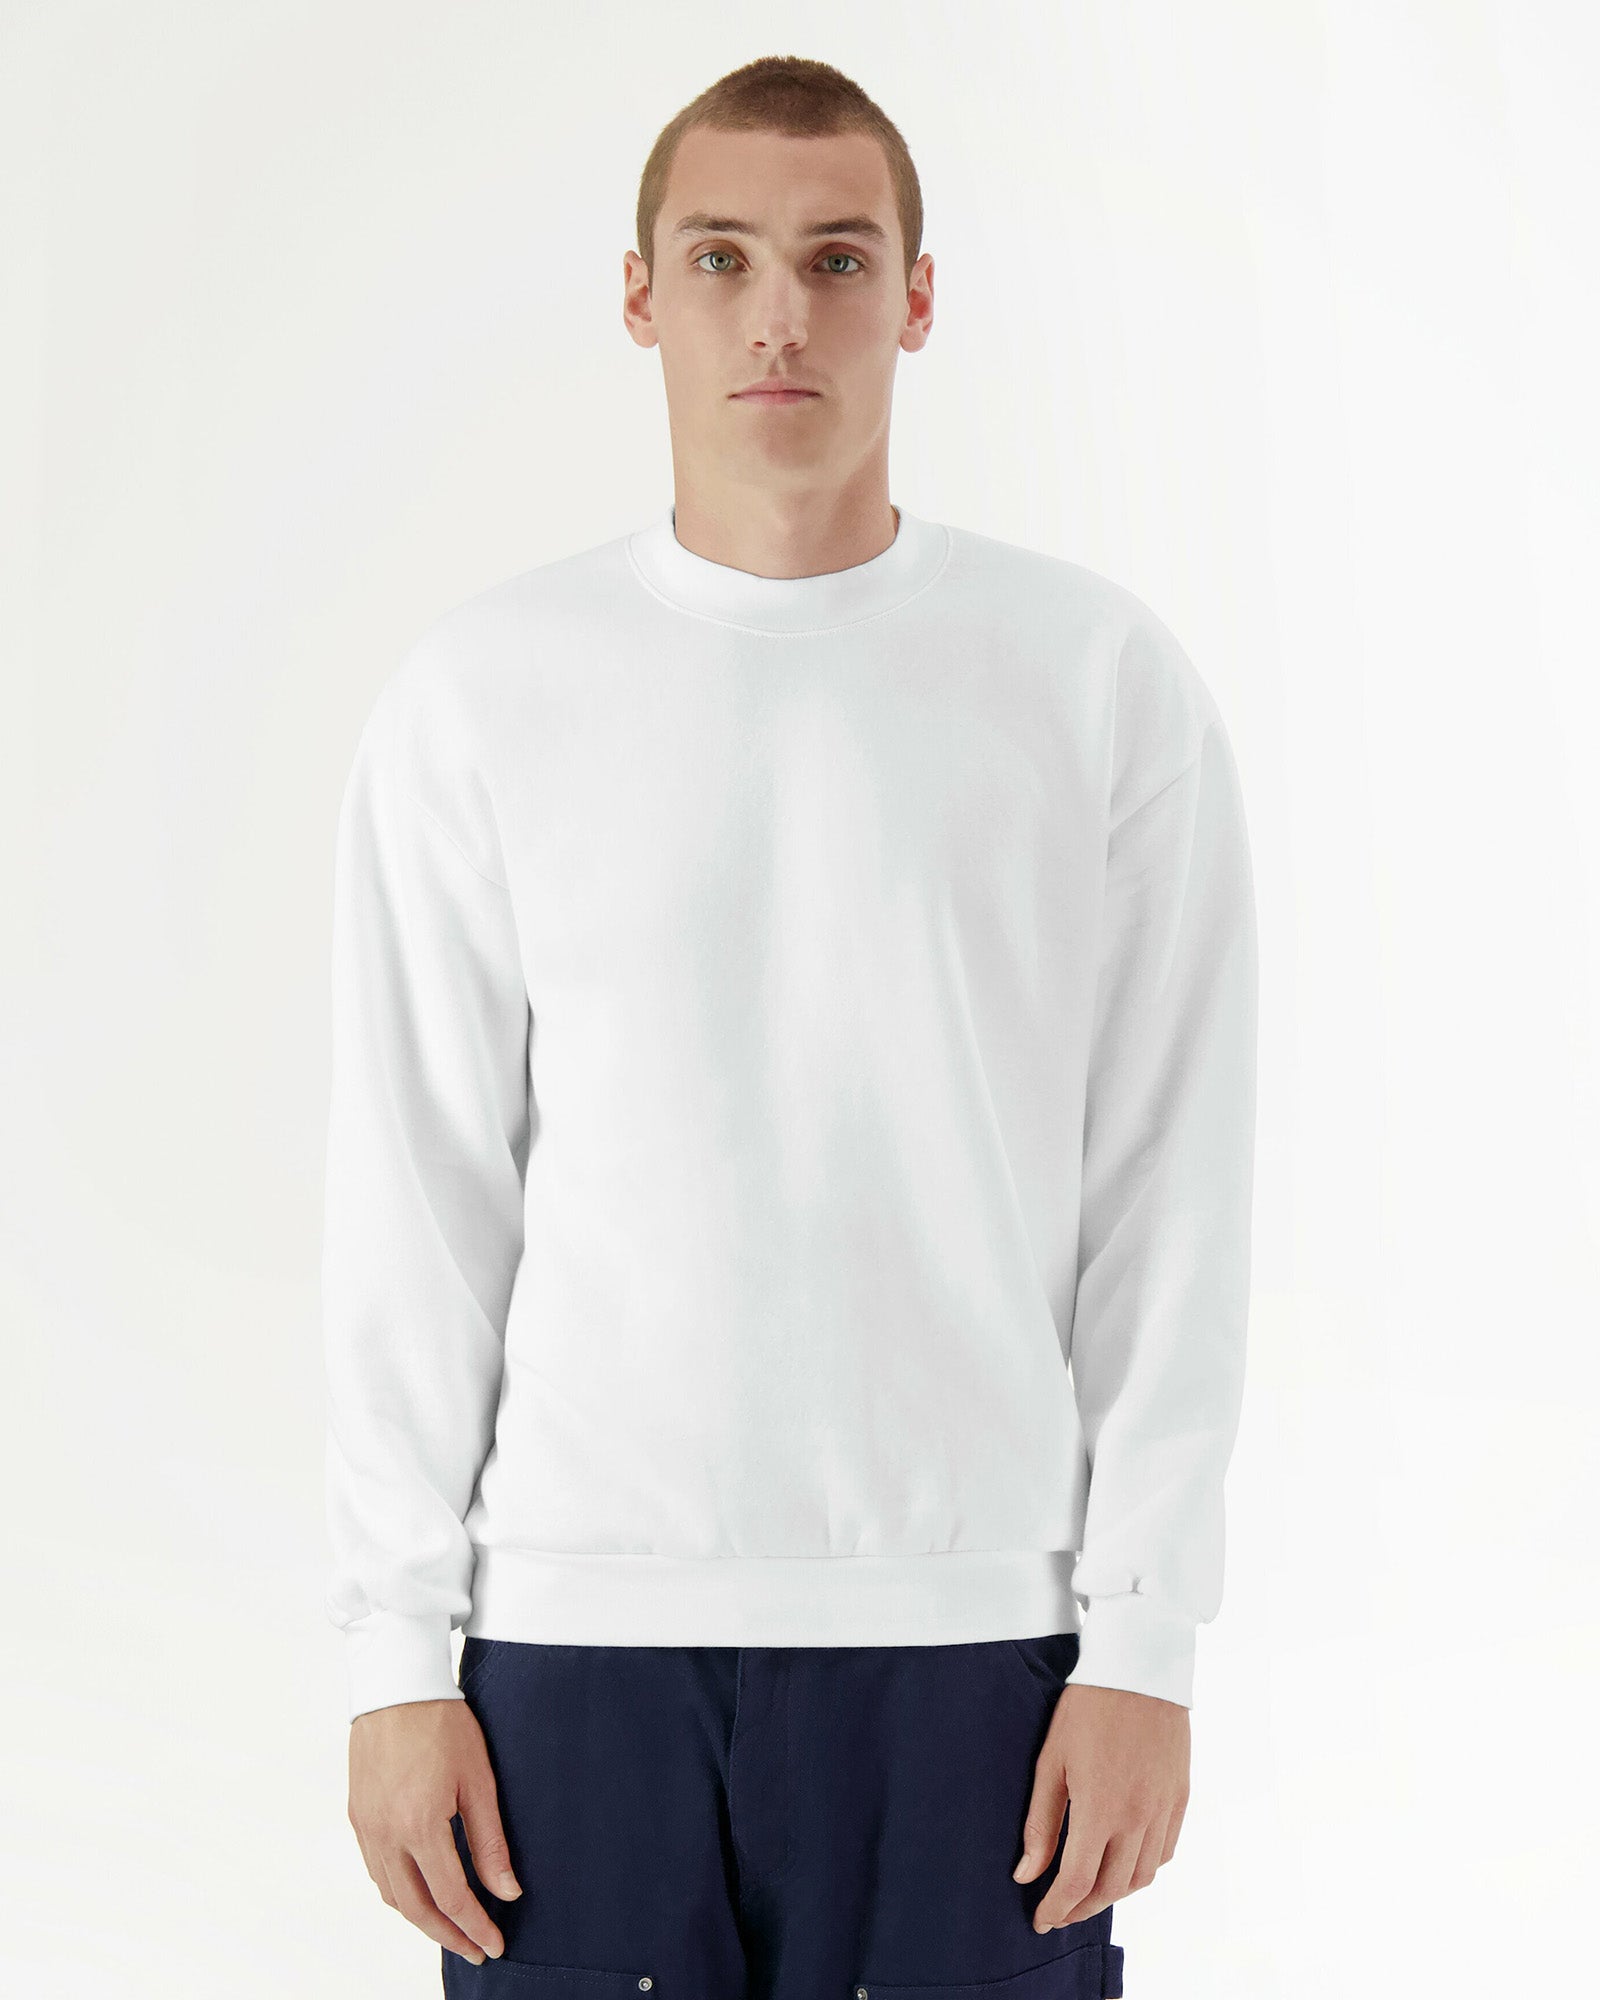 Reflex Unisex Crewneck Sweatshirt - White